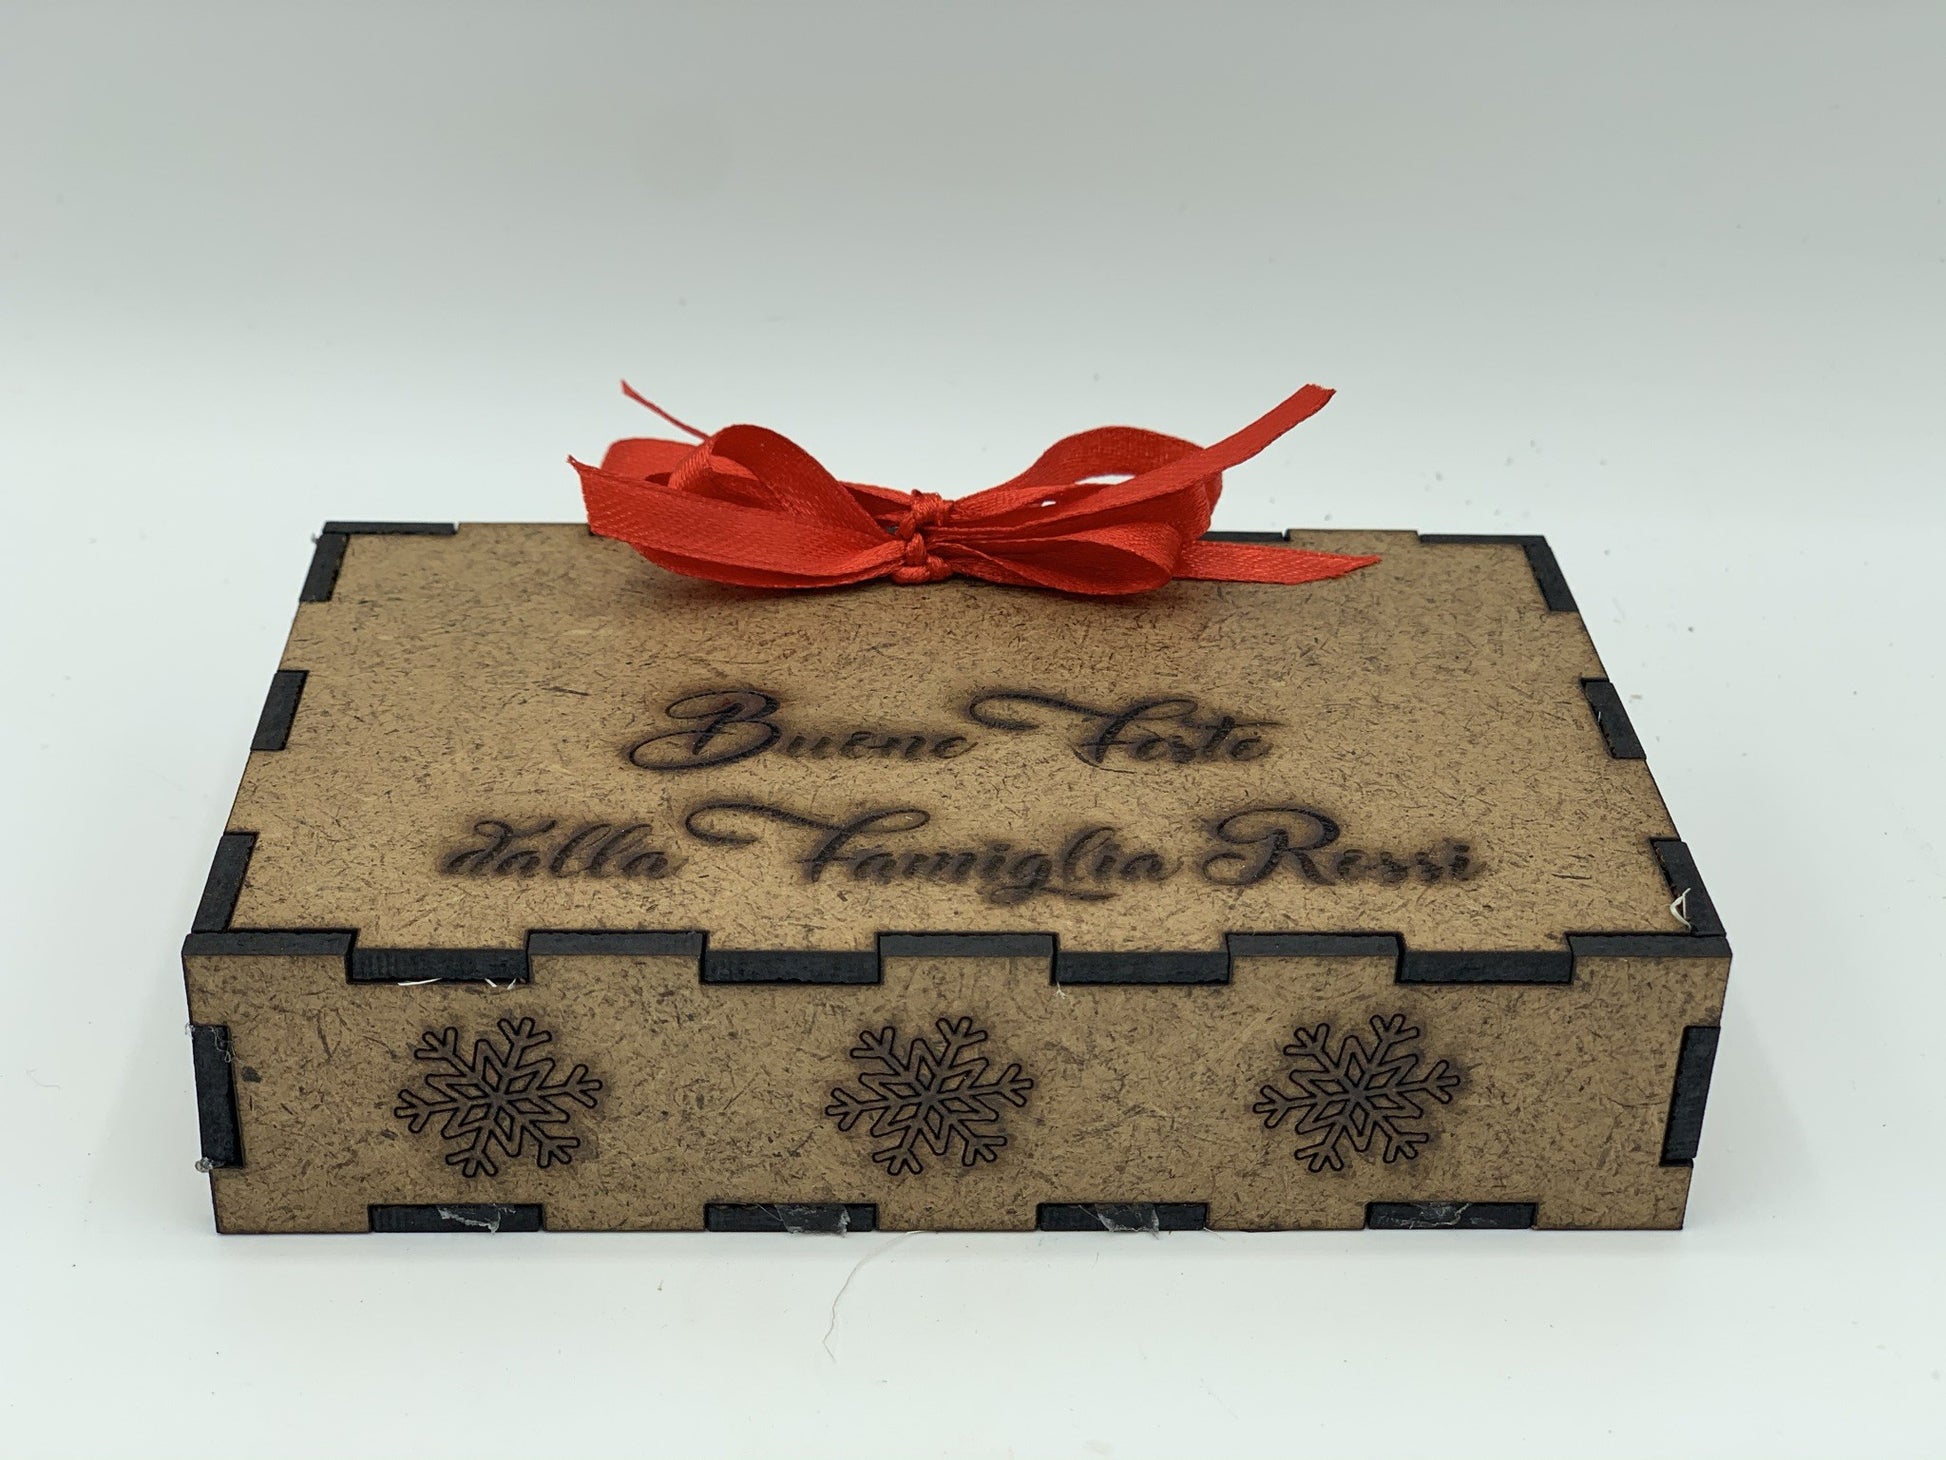 Papillon in legno Terra d'Italia con scatola regalo personalizzata Idea's Cottage